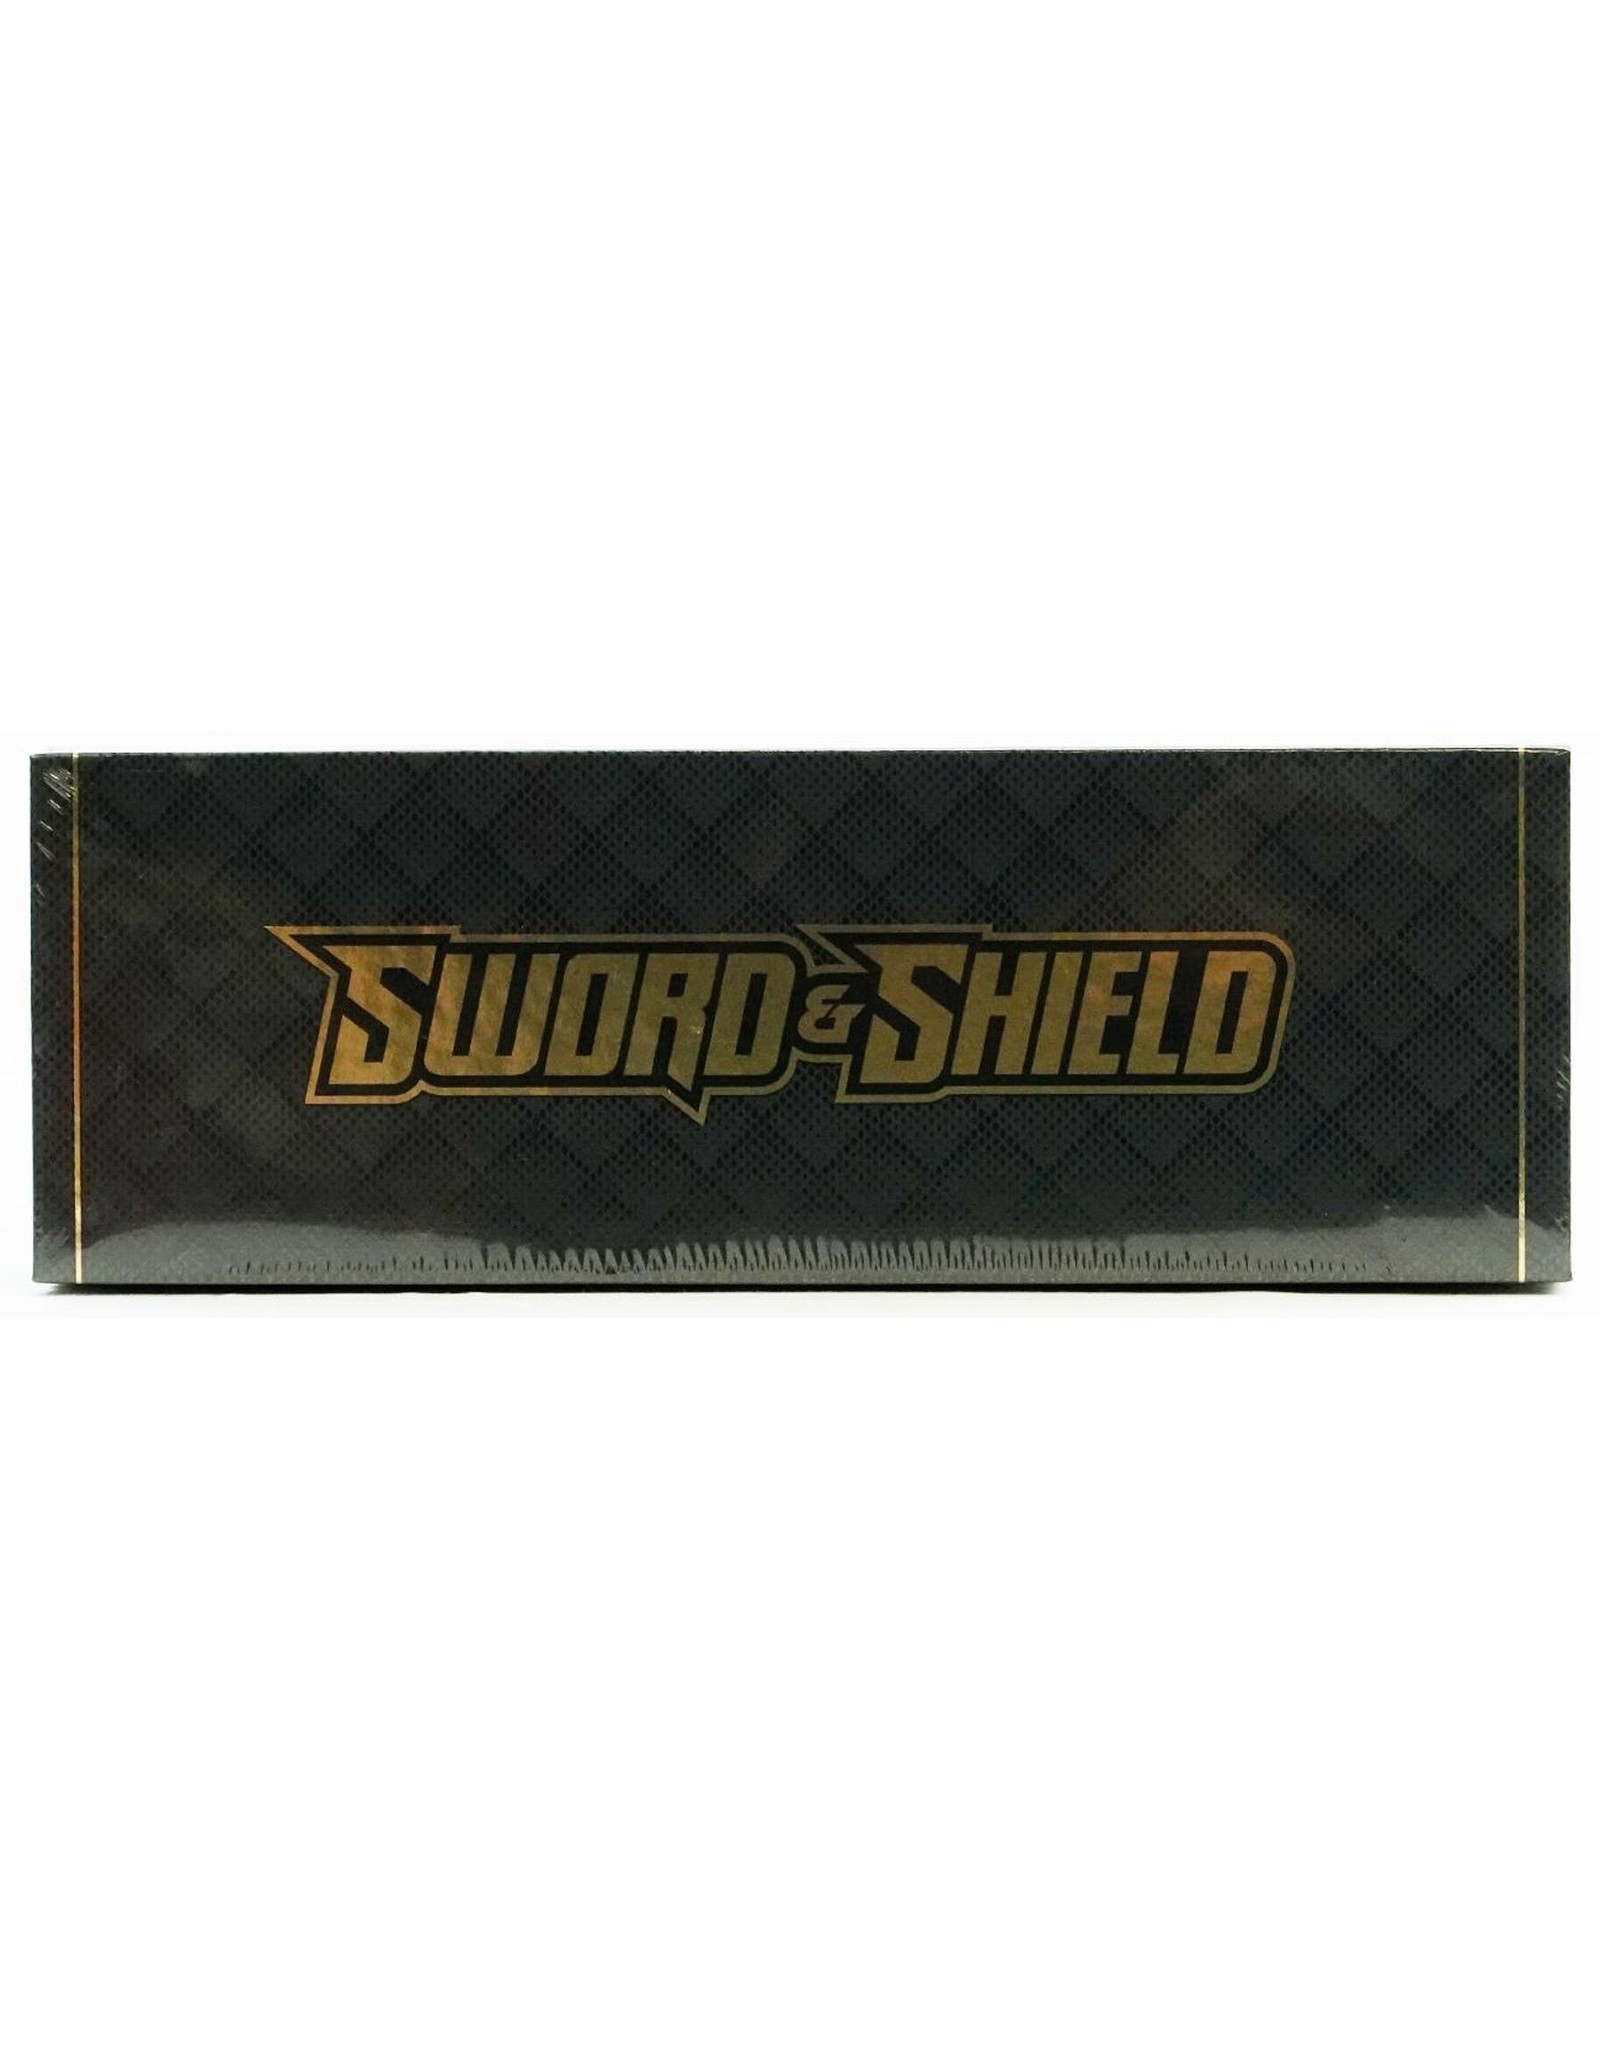 Zacian V & Zamazenta V - Sword & Shield Ultra-Premium Collection PTCGL Code